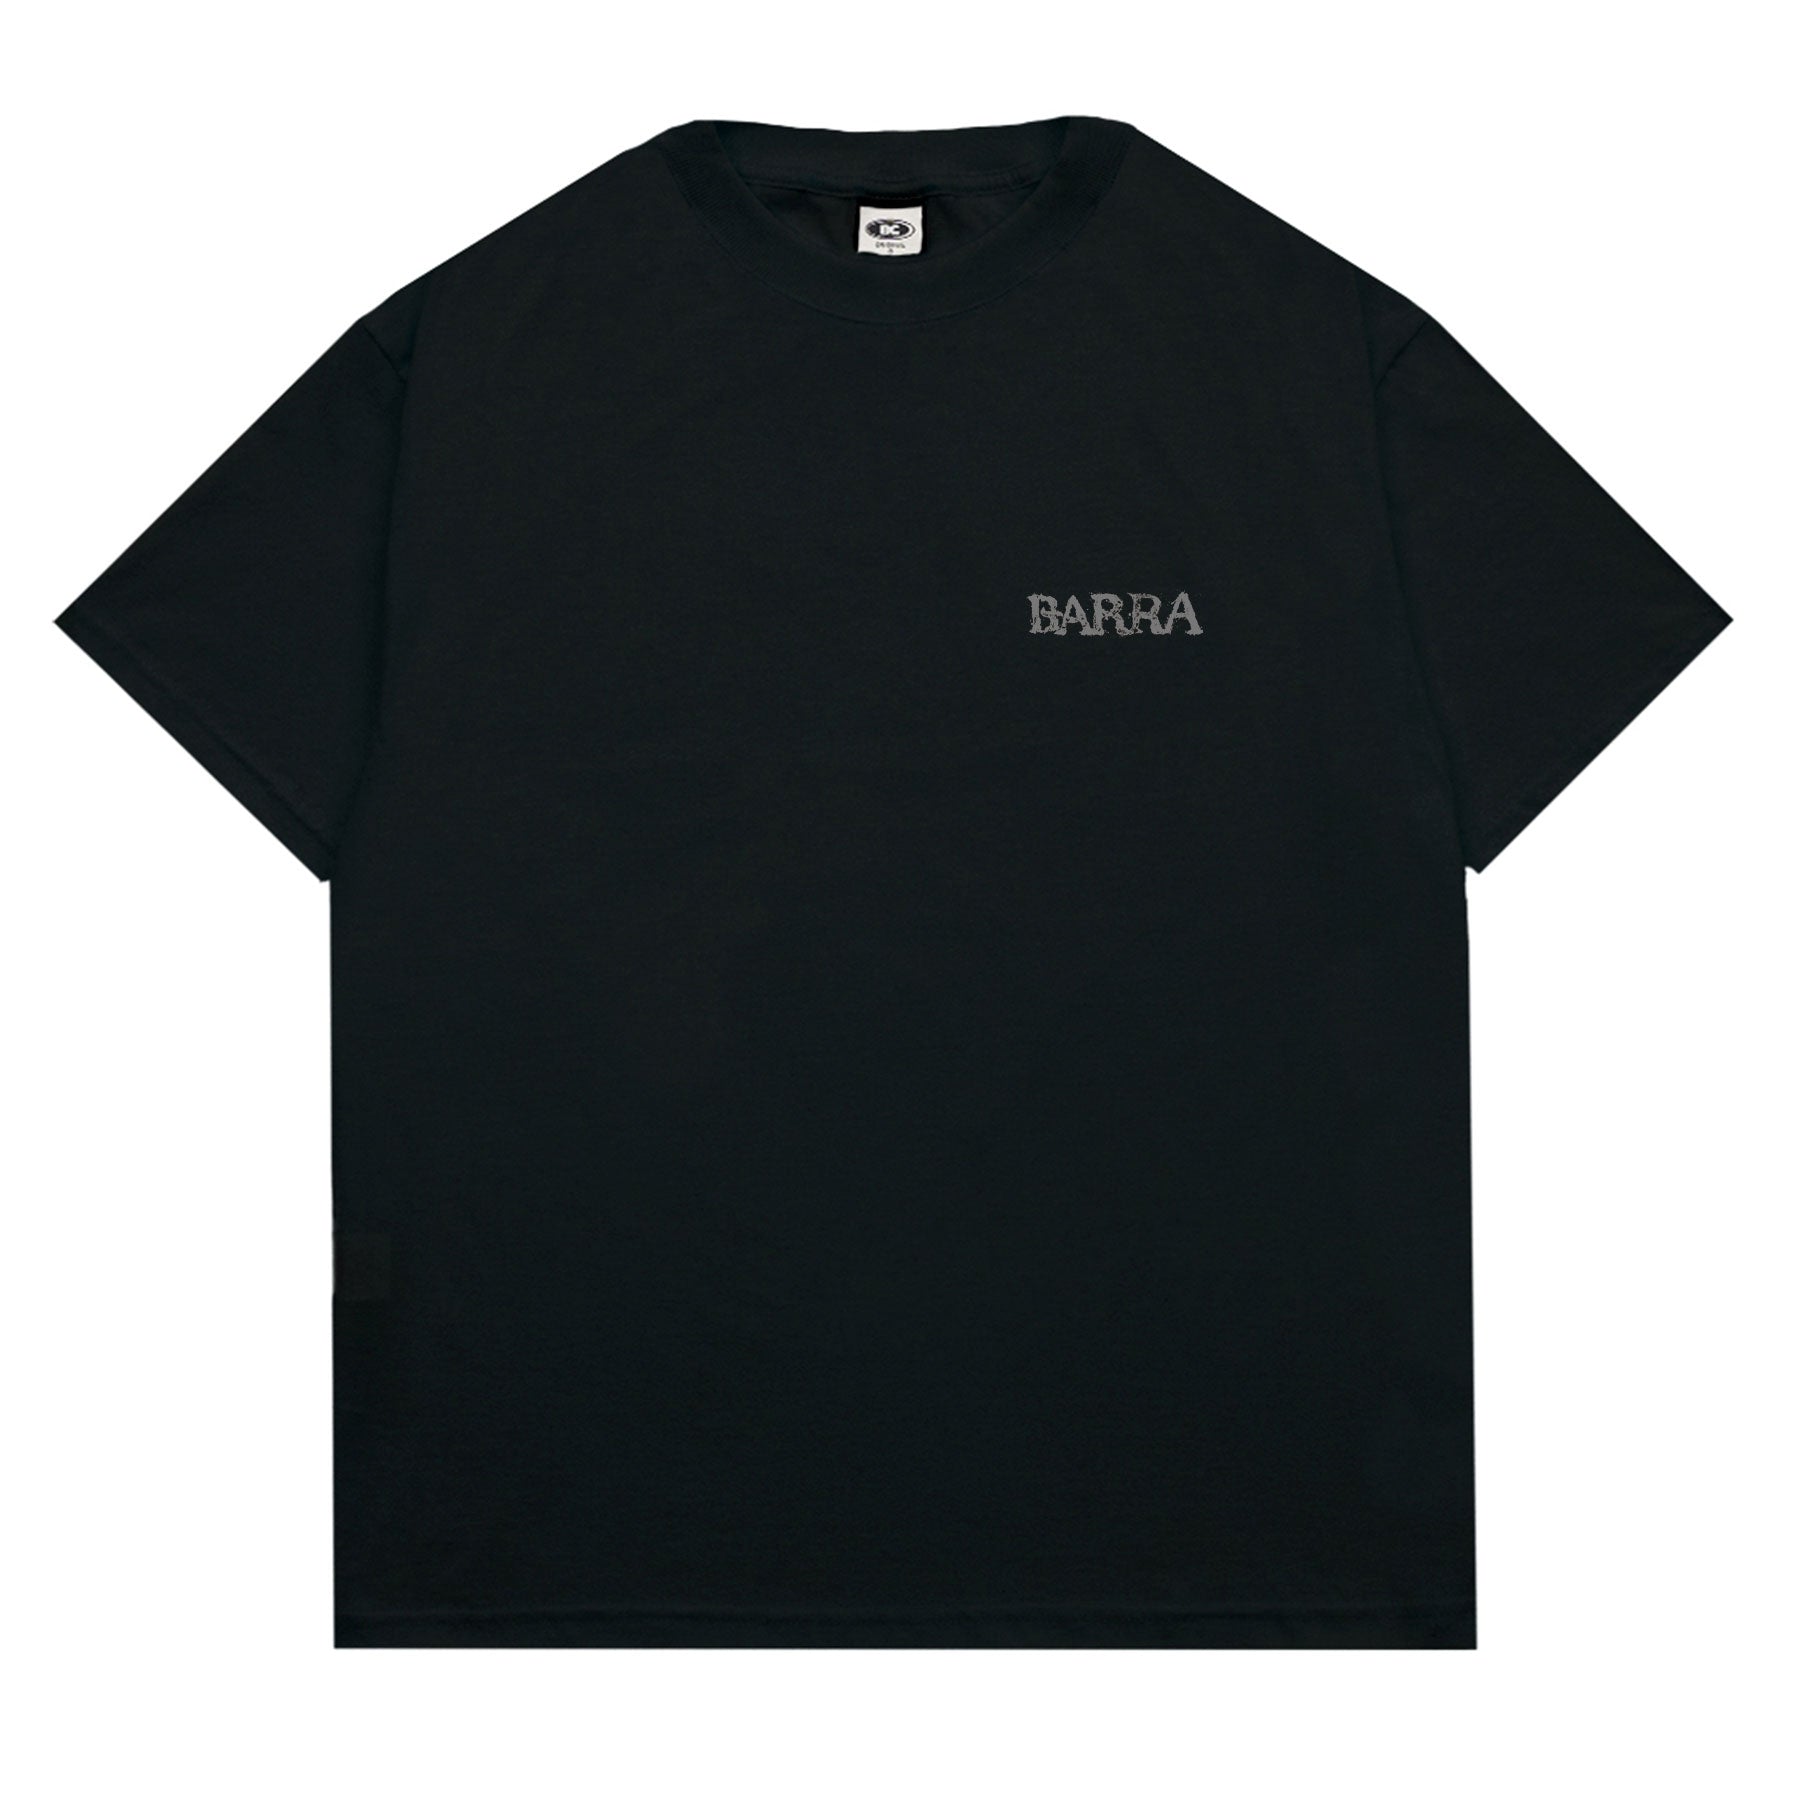 Barra Crew - Camiseta Lama Preta